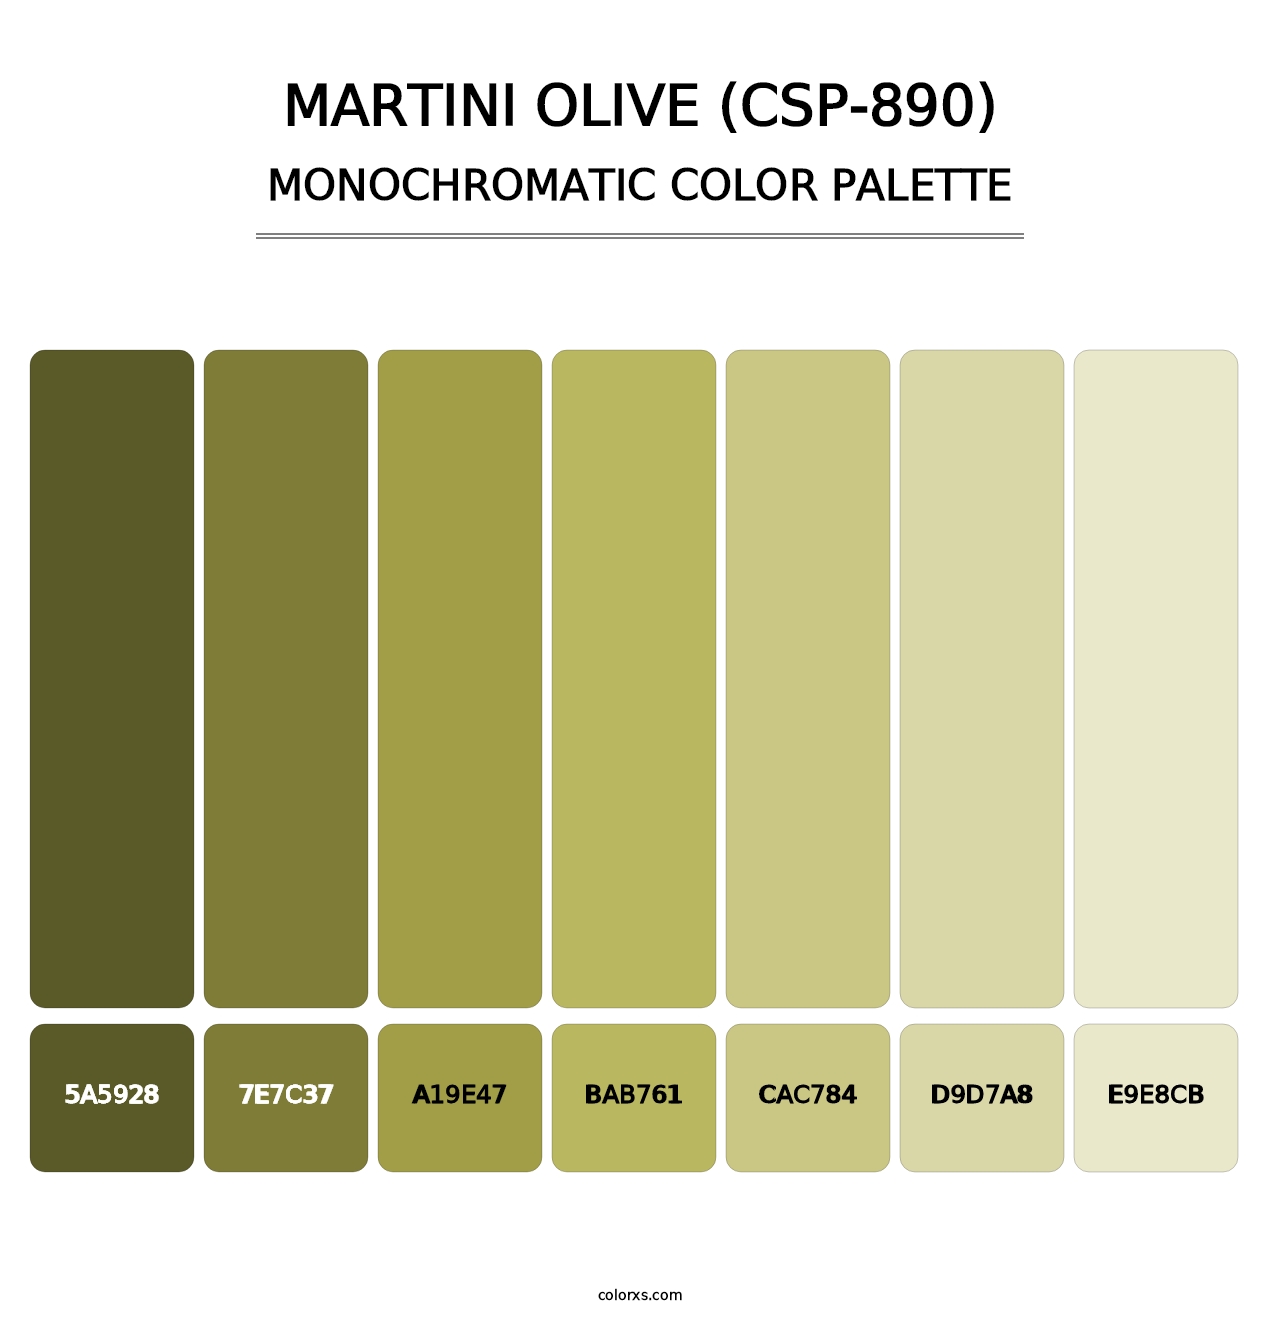 Martini Olive (CSP-890) - Monochromatic Color Palette